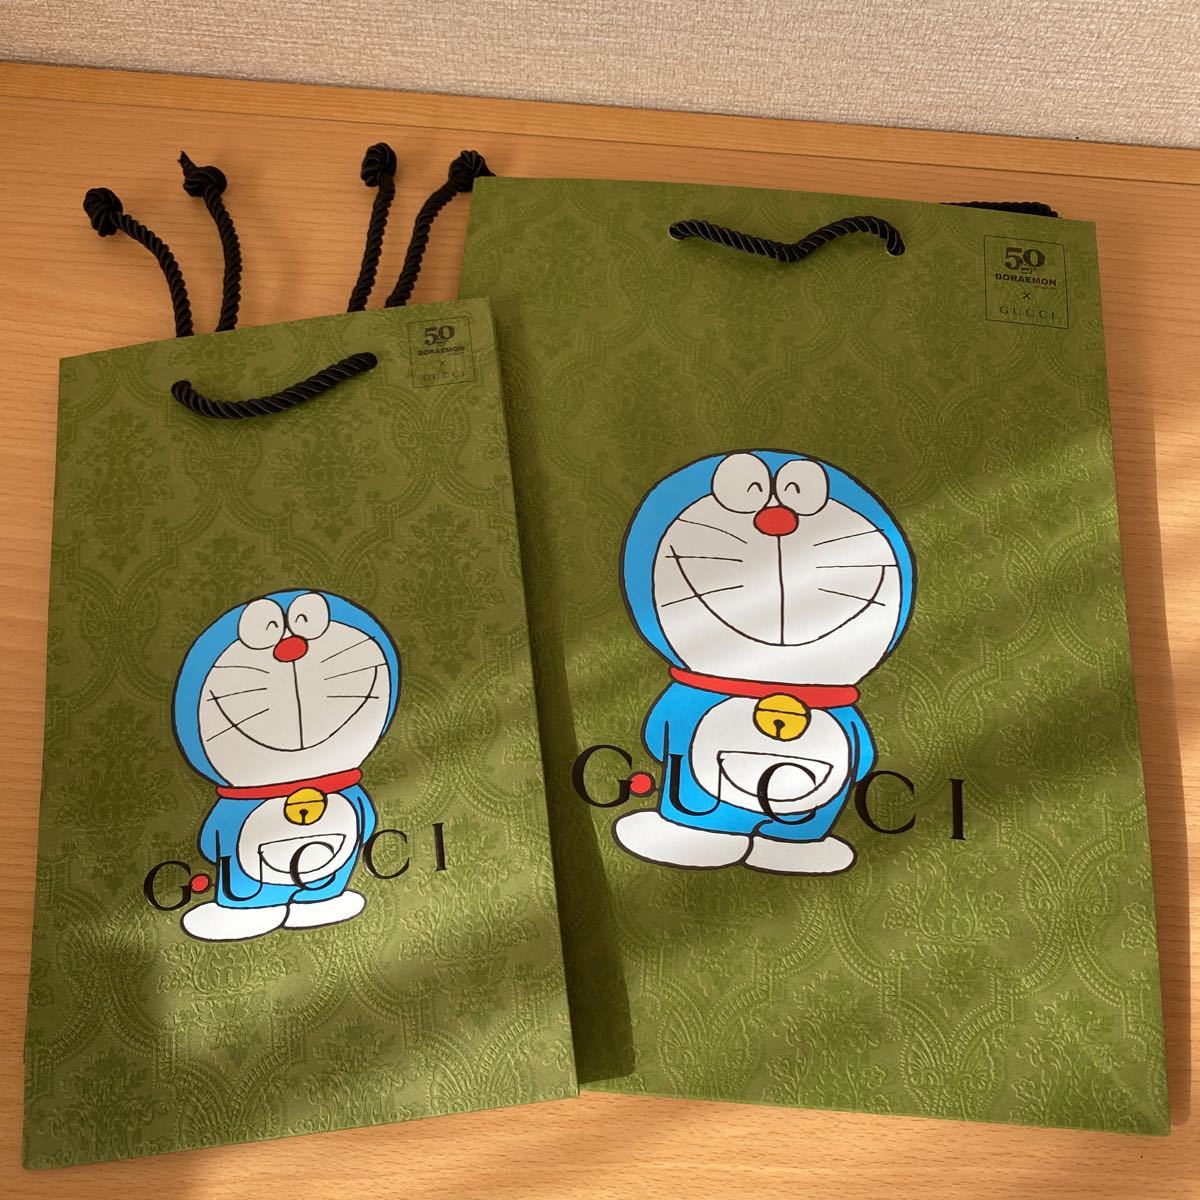  быстрое решение новый товар такой же Doraemon Gucci GUCCIshopa- бумажный пакет 2 листов обычная почта включая доставку 